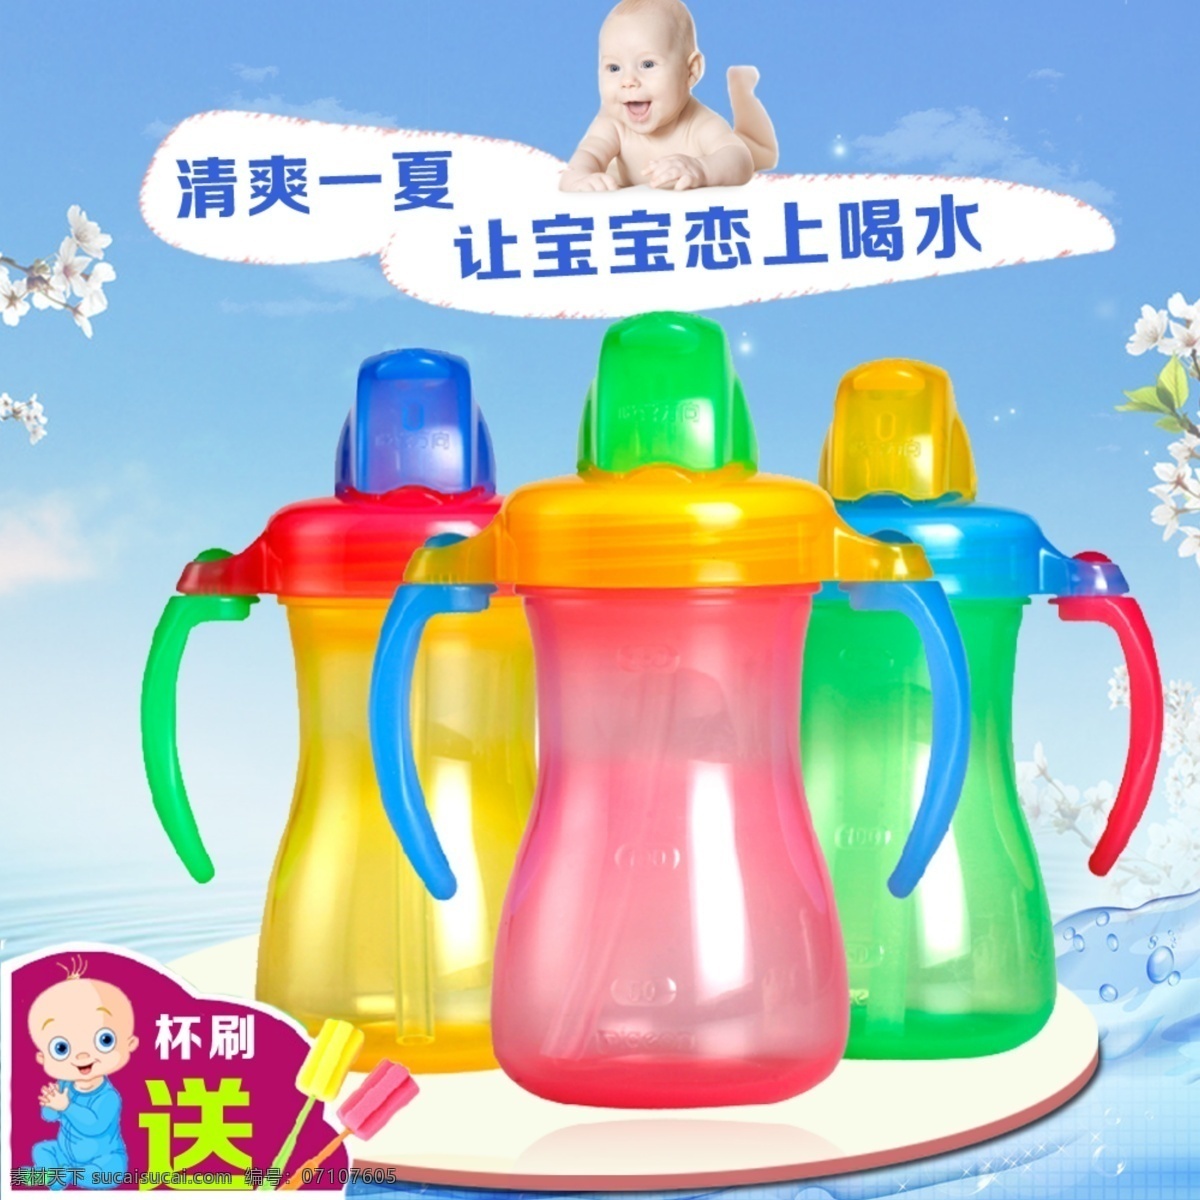 宝宝 喝 水杯 宝宝水杯 婴儿吸管杯 水杯主图 原创设计 原创淘宝设计